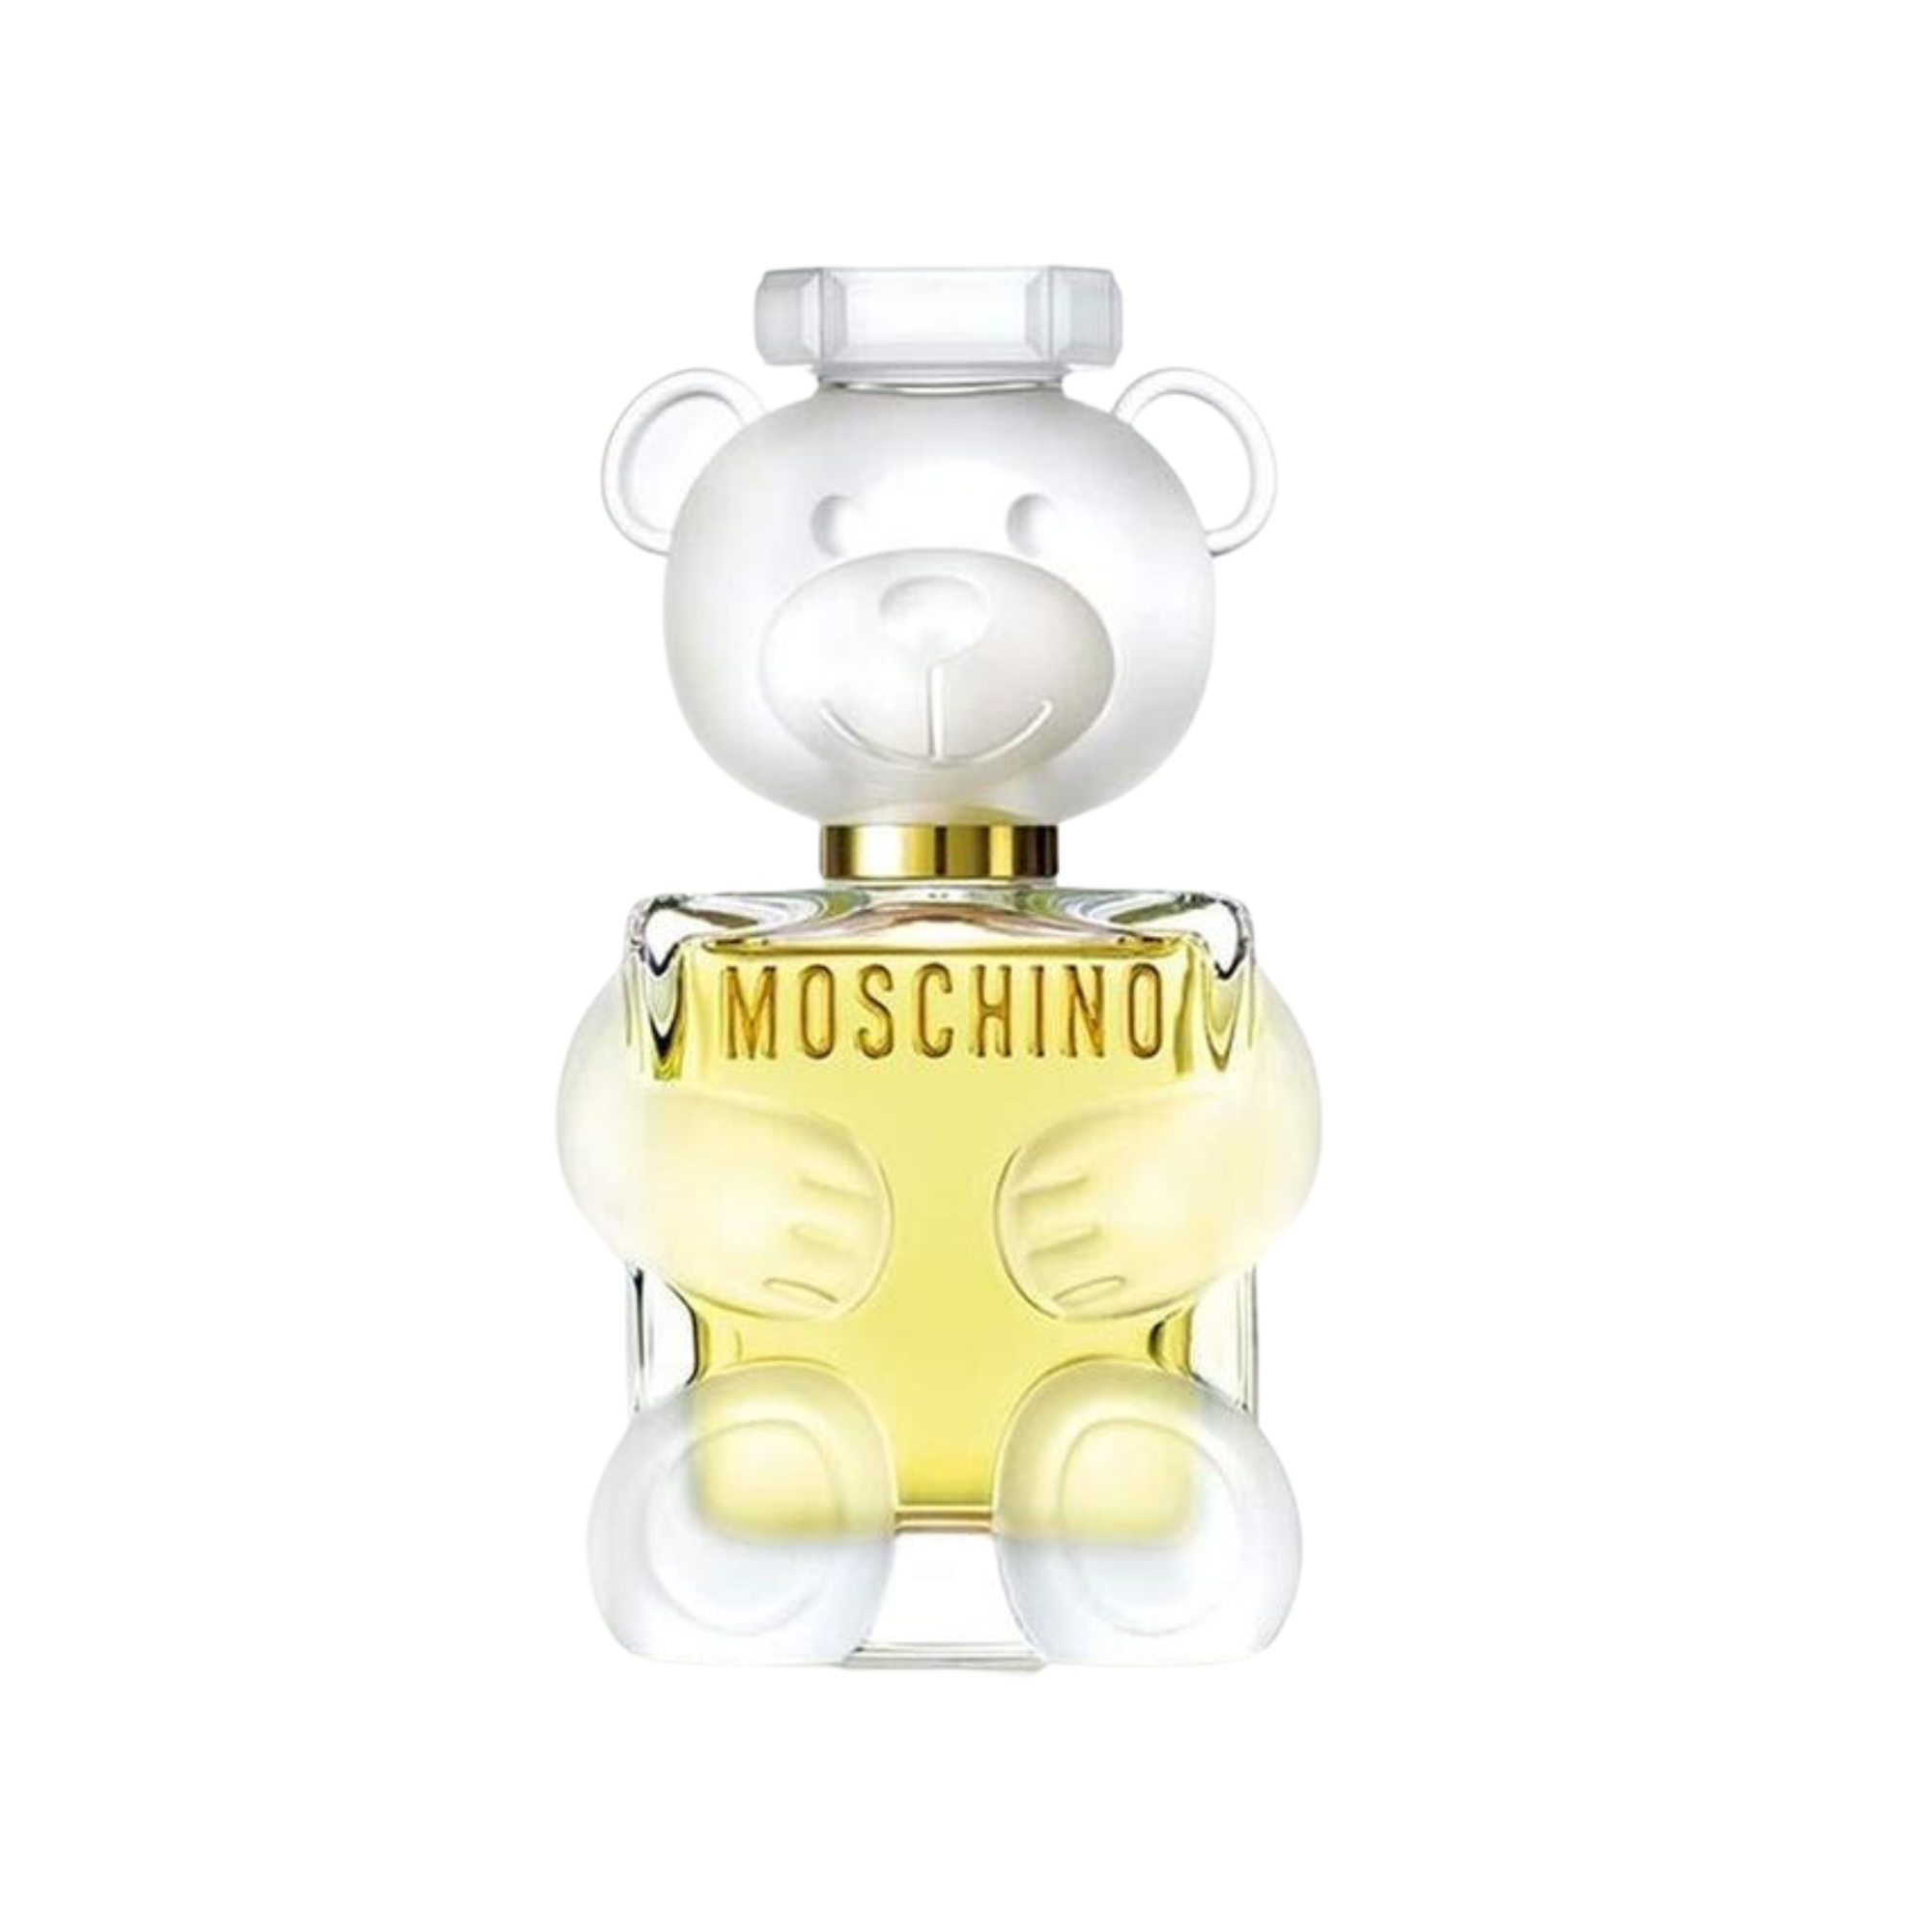 Moschino Toy 2 For Women Eau De Parfum